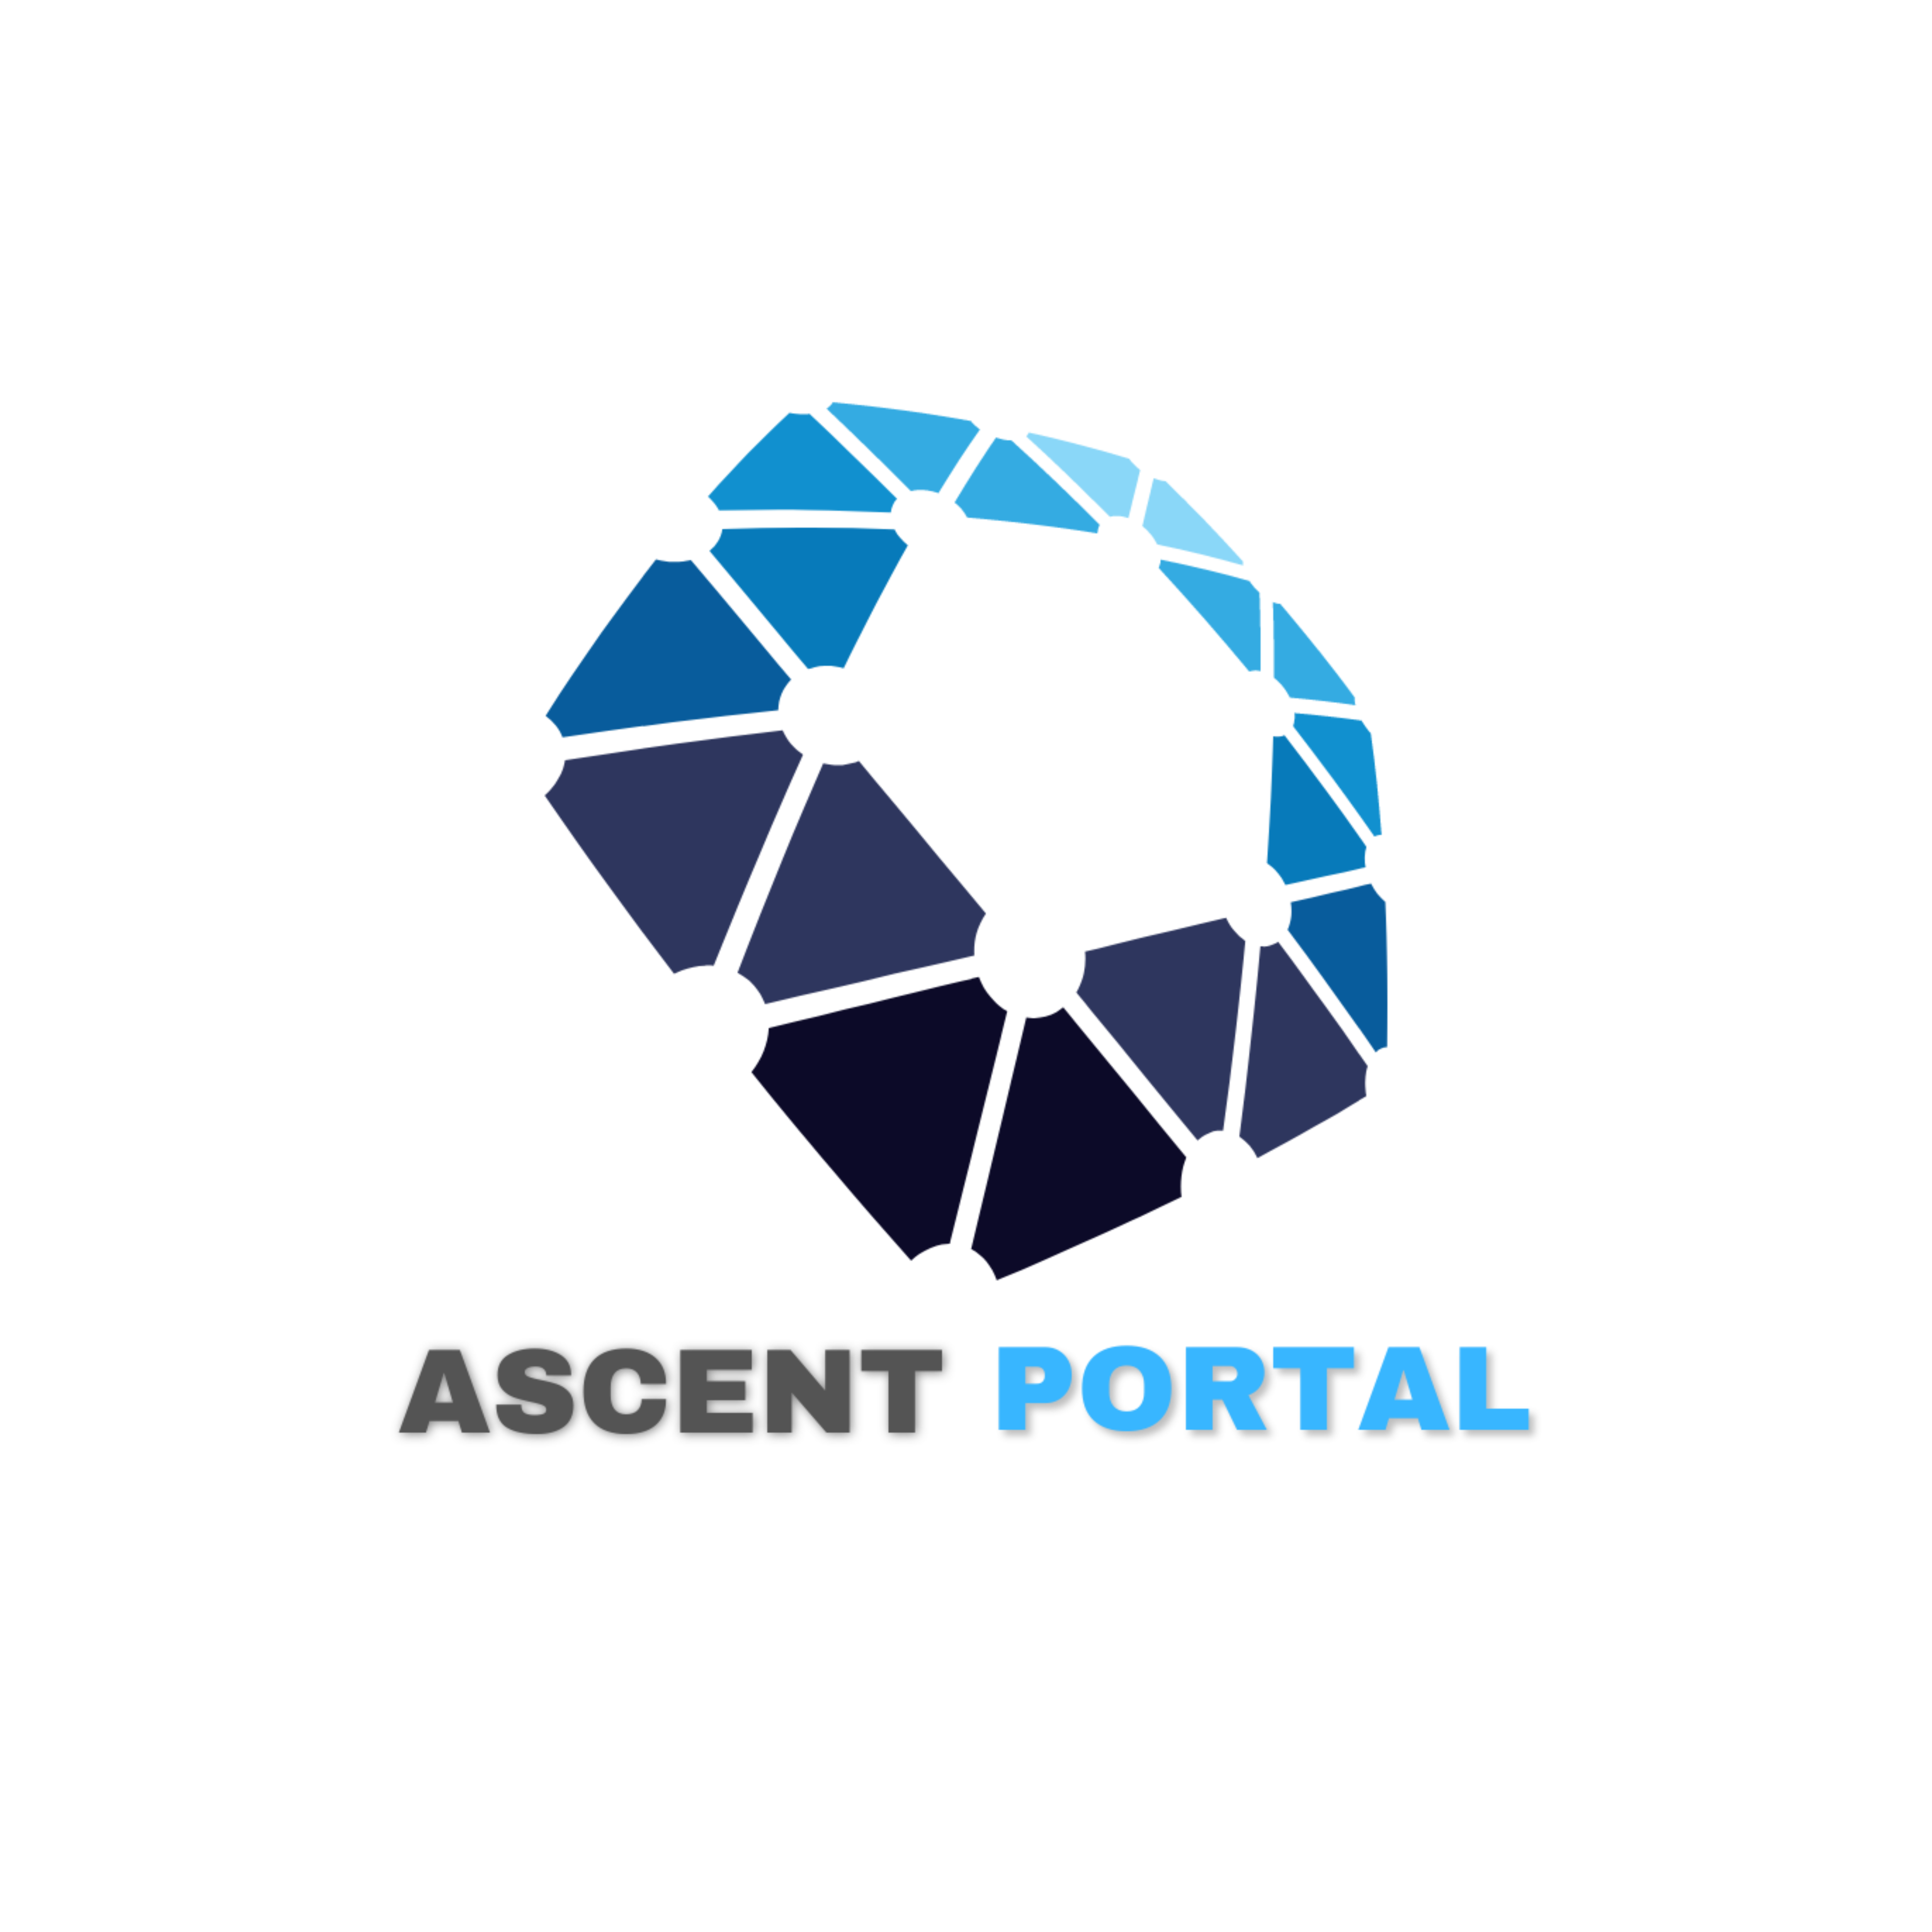 Ascent Portal